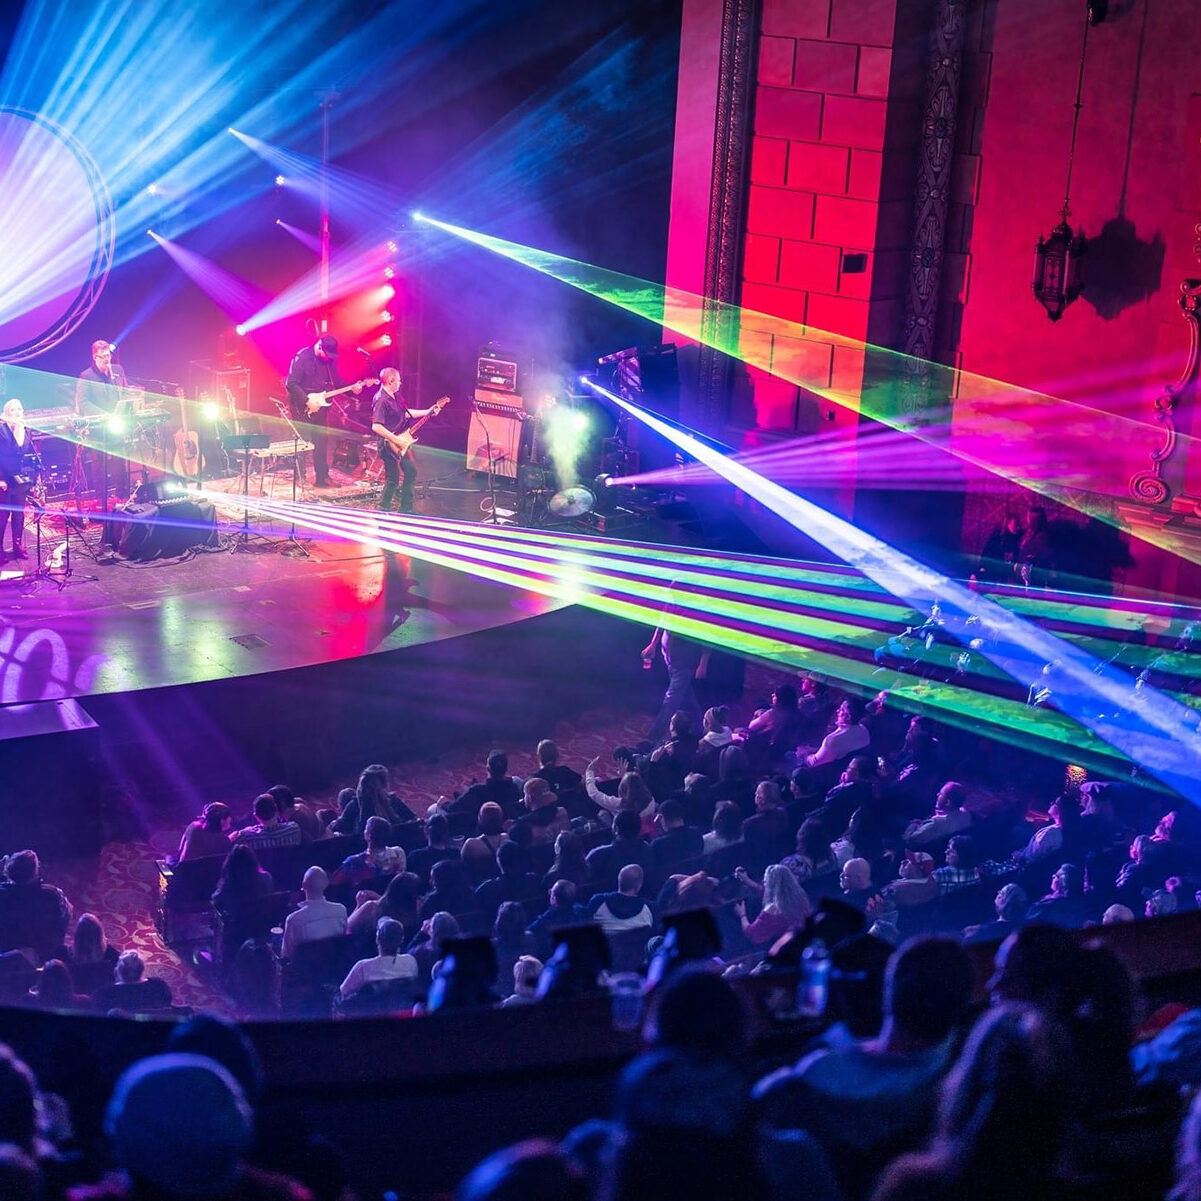 Laser lights during Frauenthal concert